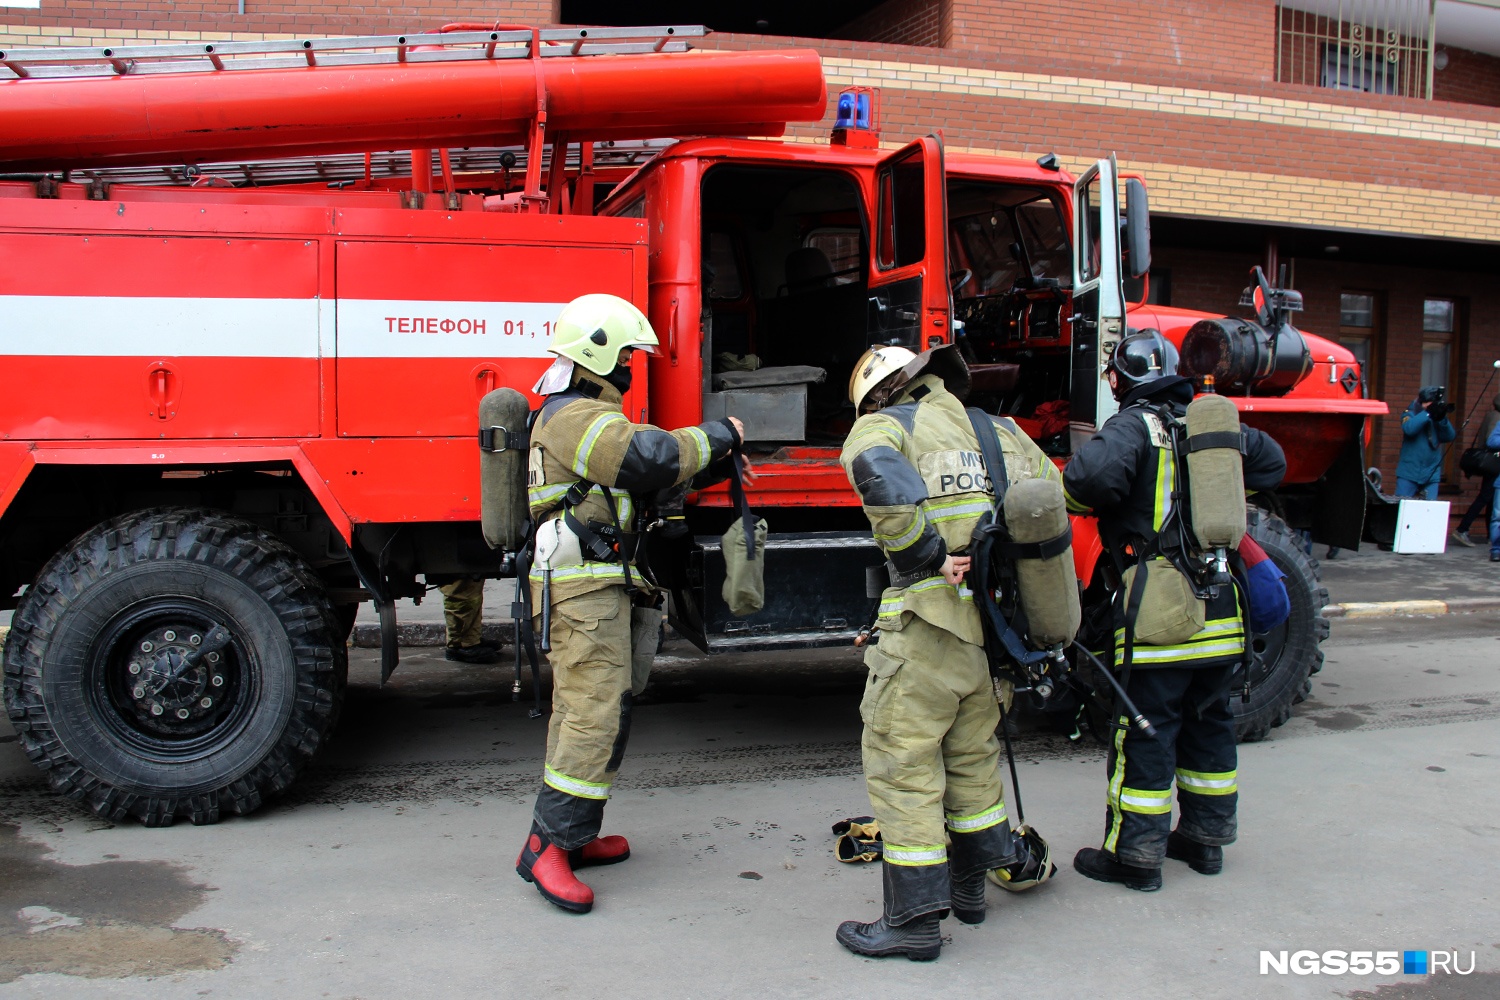 Омские пожарные спасли двоих детей, спавших в задымлённой комнате общежития